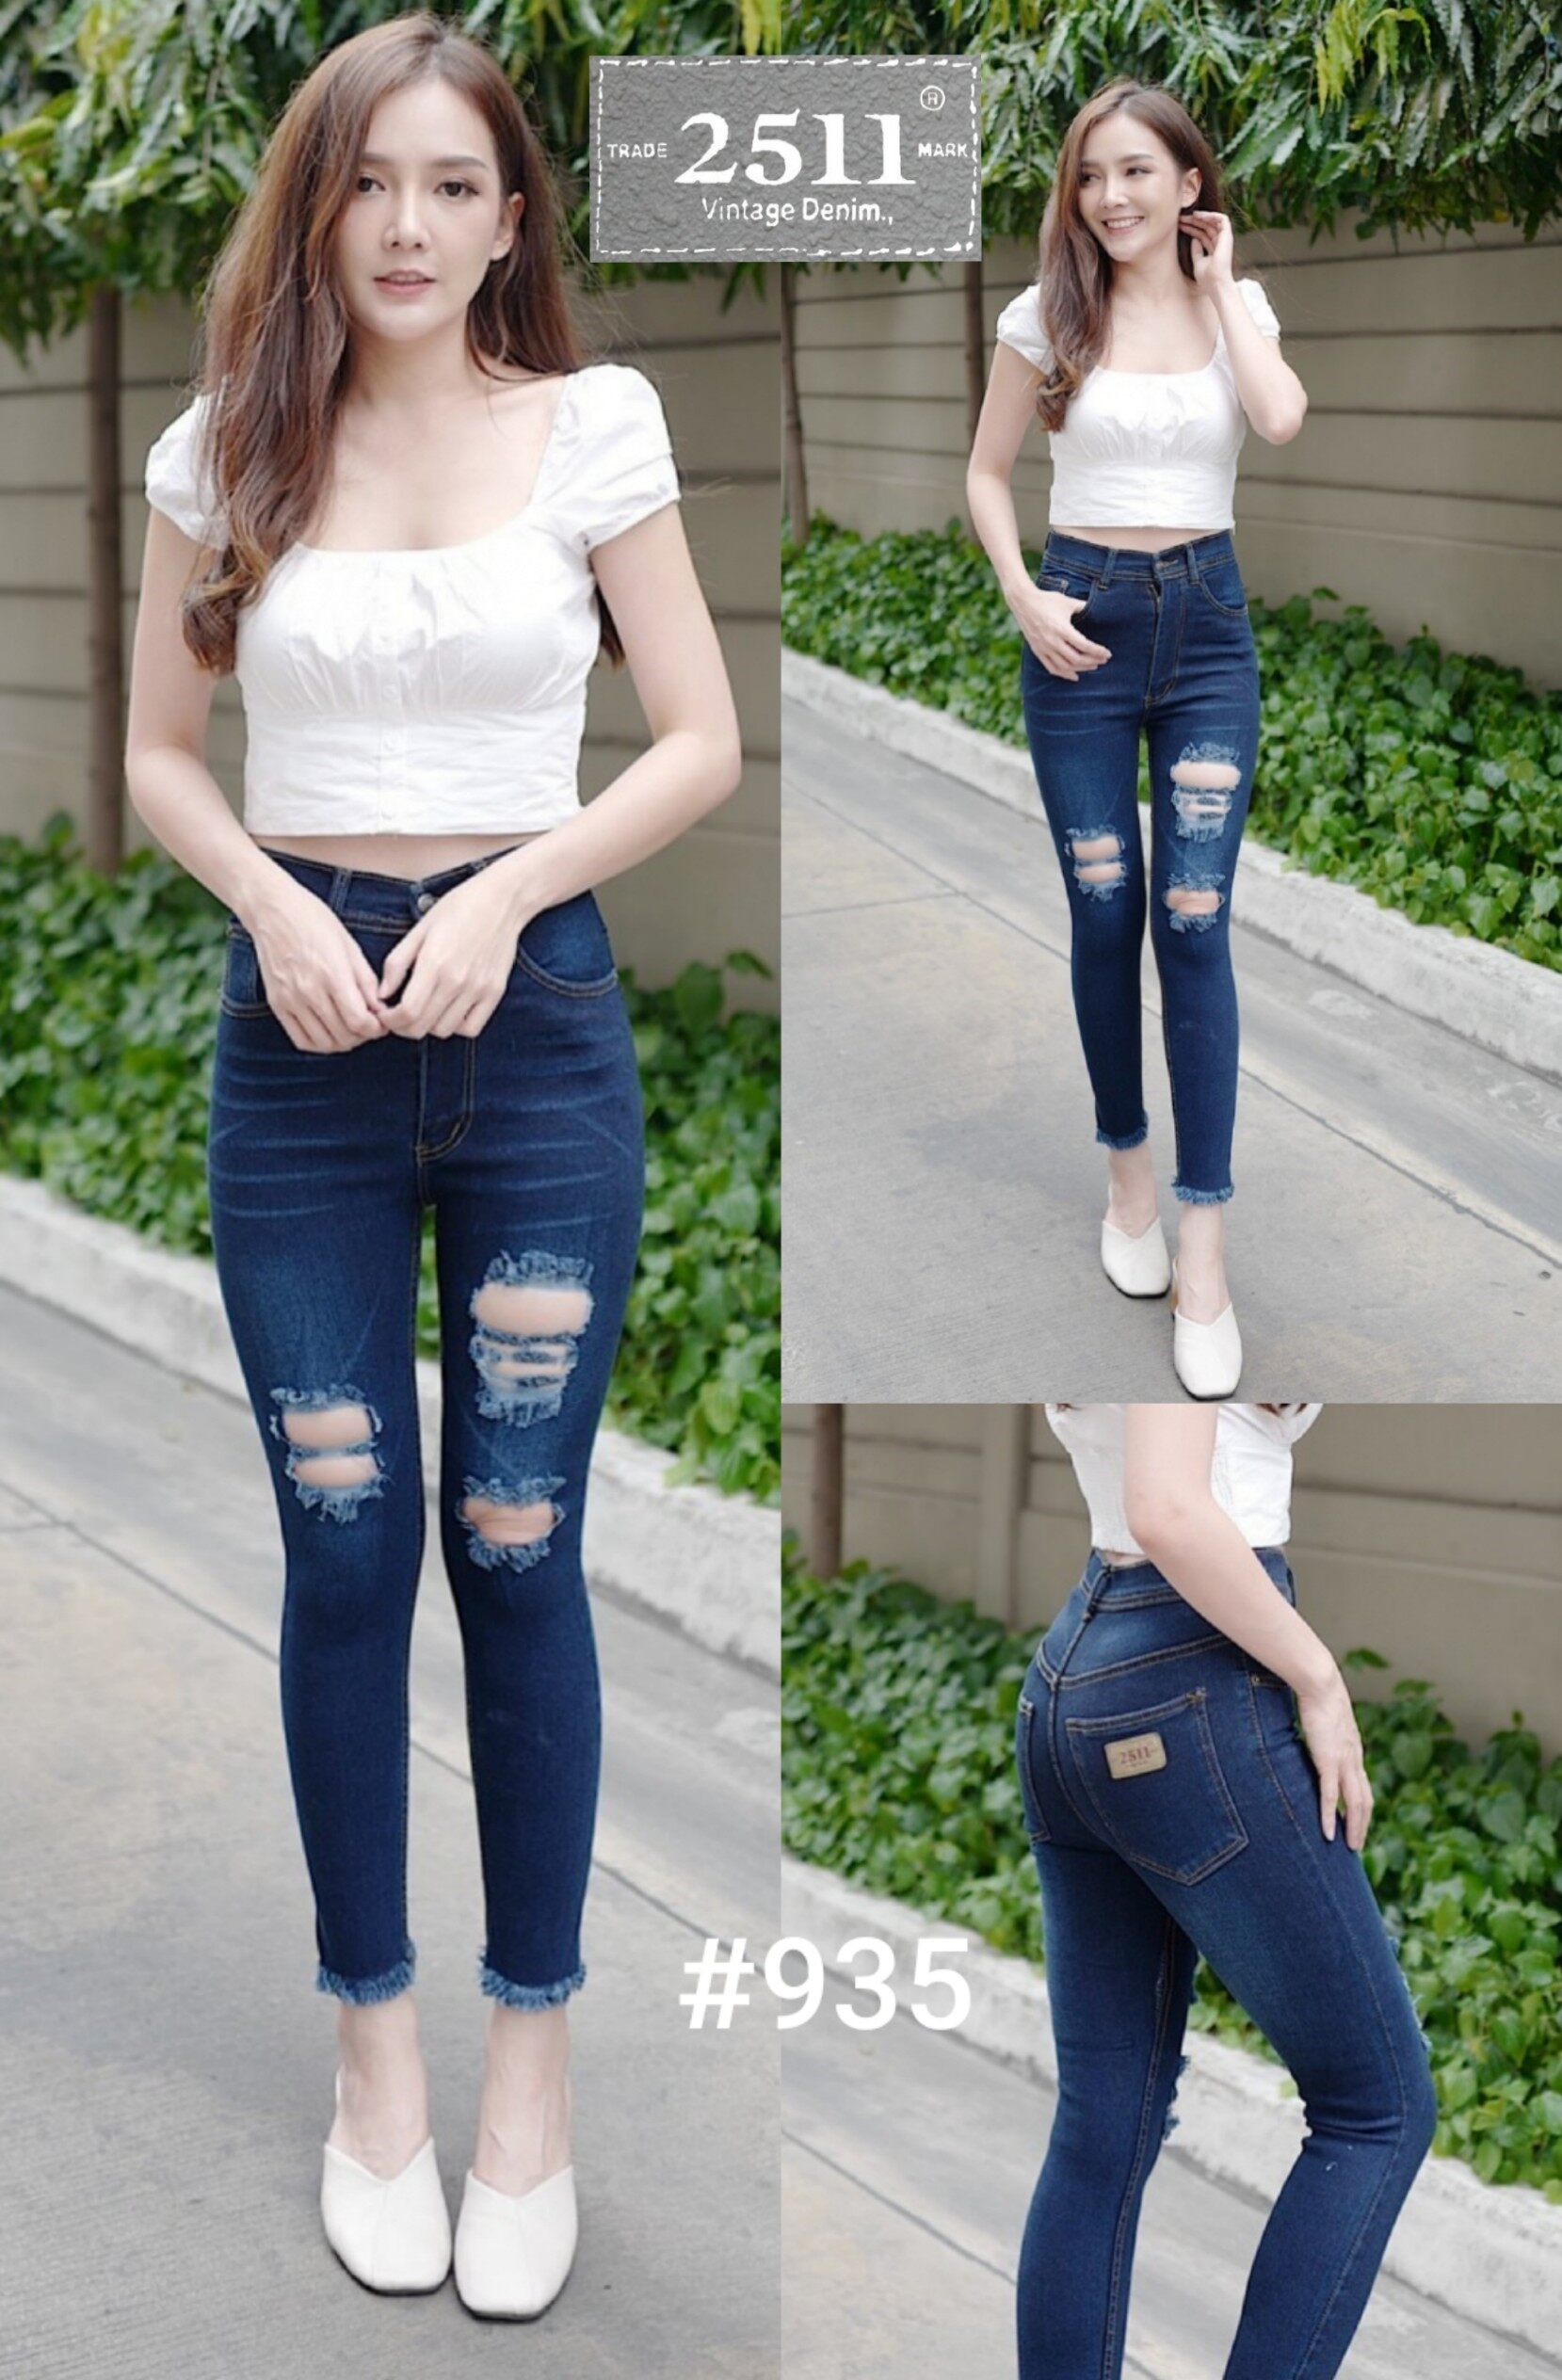 [[ถูกที่สุด]]2511 Jeans by GREATกางเกงยีนส์ ผญ กางเกงยีนส์ กางเกงยีนส์ผู้หญิง กางเกงยีนส์ยืด เอวสูง ยีนส์ยืด เข้ารูปใส่แล้วสวยจริงๆค่ะ